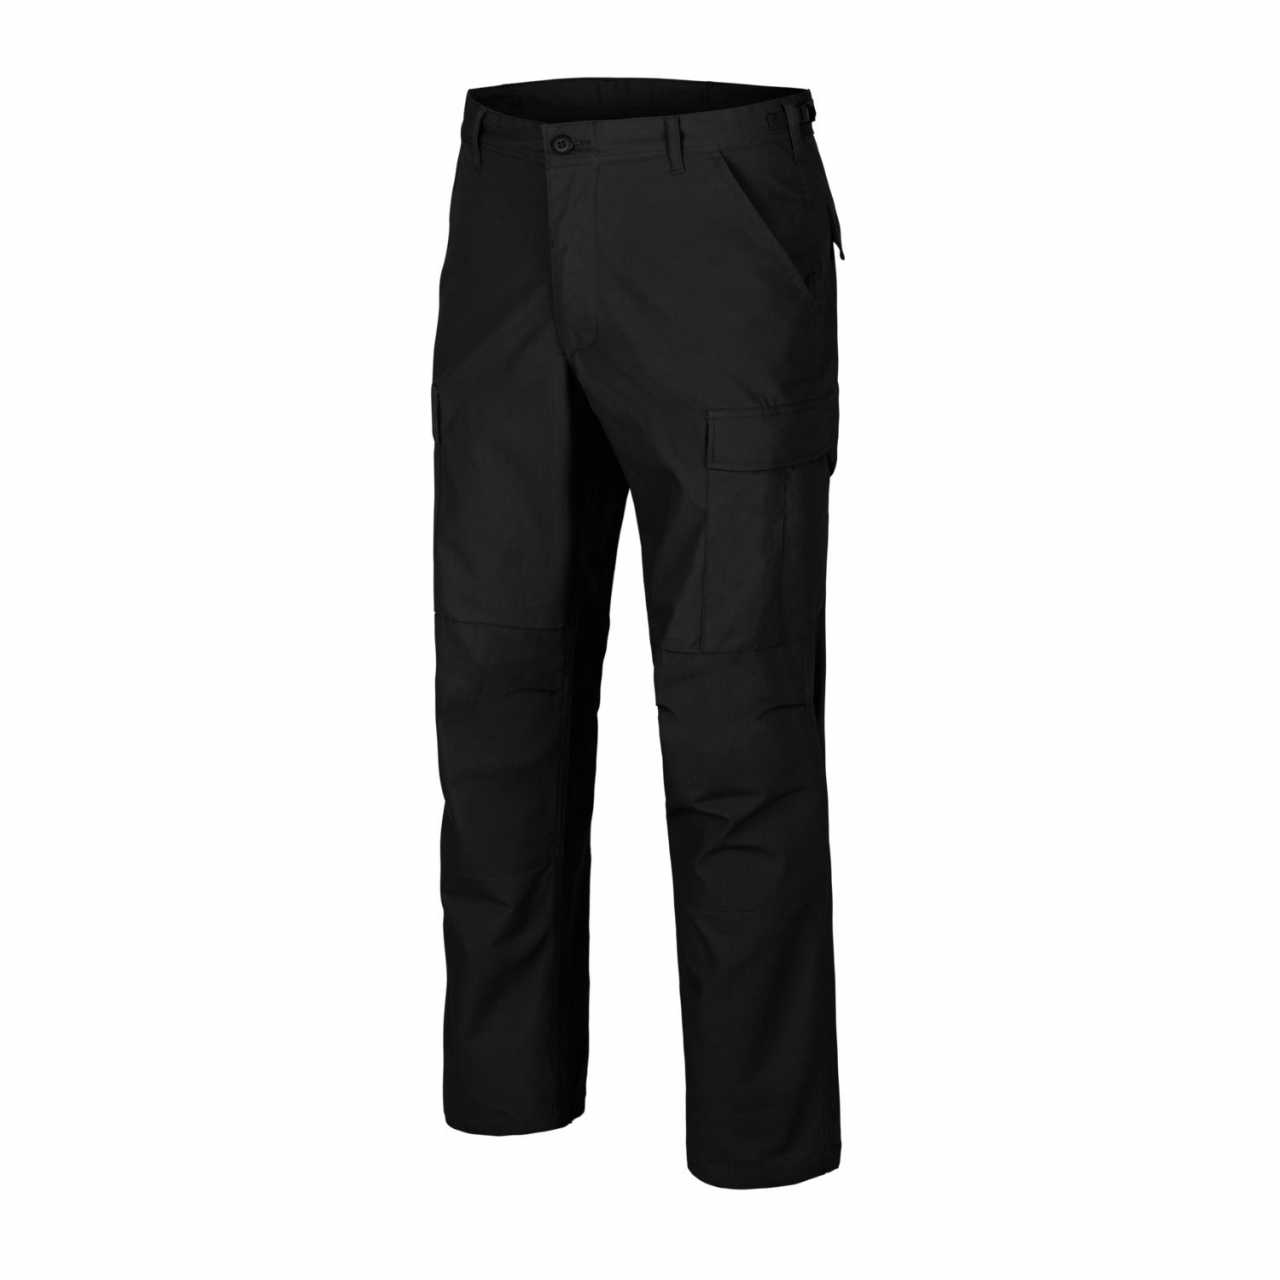 Kalhoty Helikon BDU Pants Poly Ripstop - černé, L